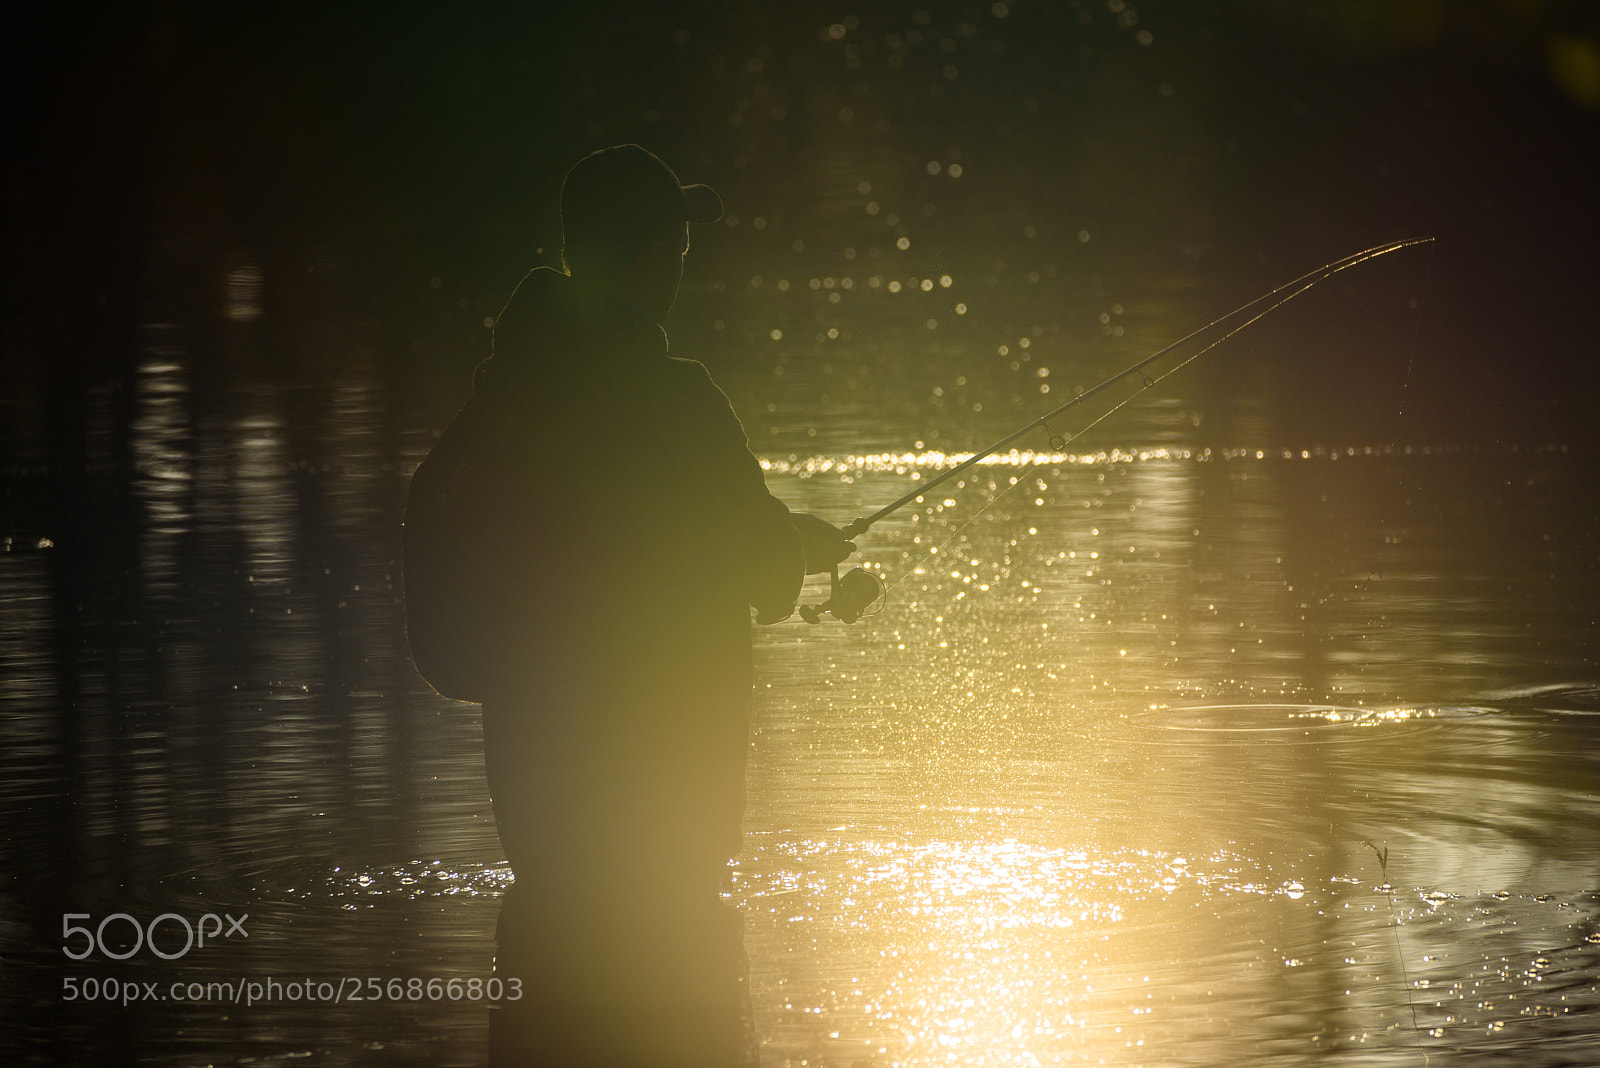 Nikon D750 sample photo. Fisherman in lake, during photography